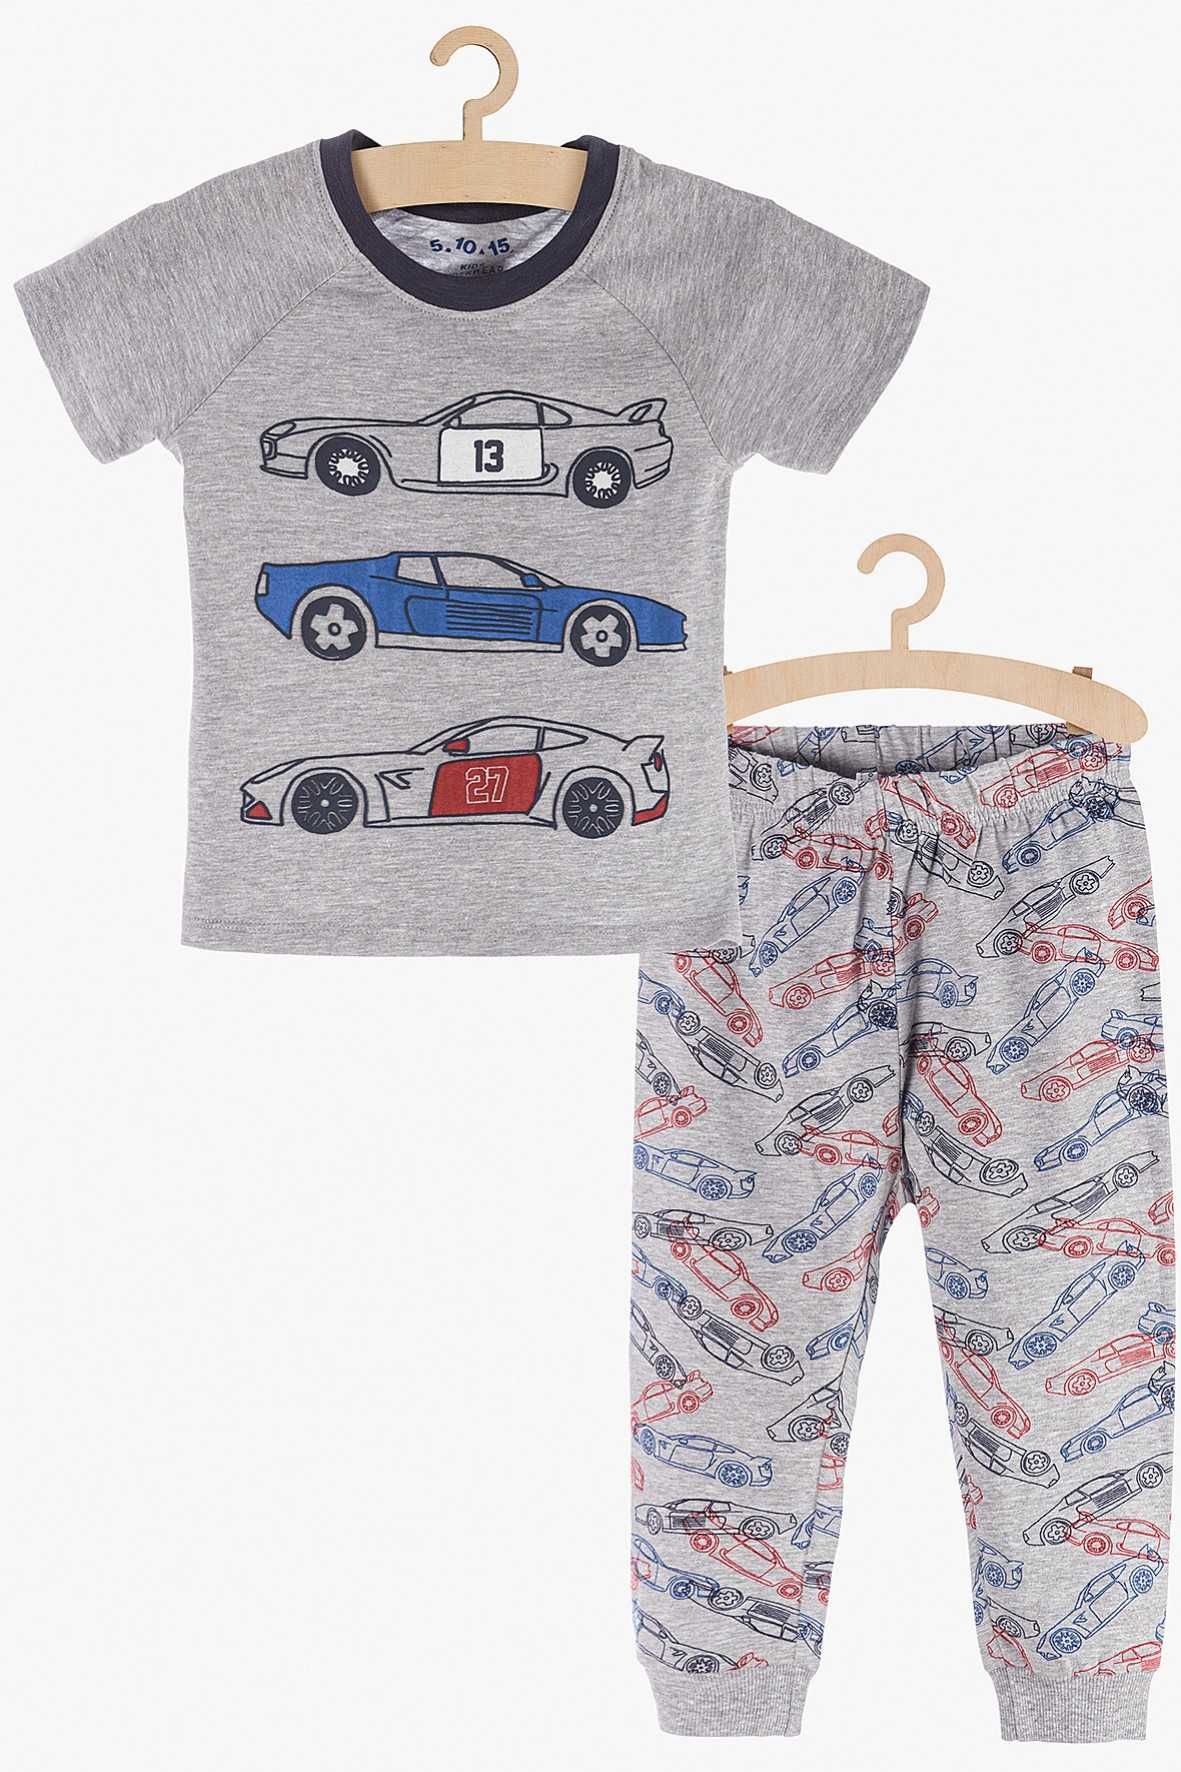 Пижама для мальчика 4-6 лет 110-116 см 5.10.15 Kids с машинами легкая